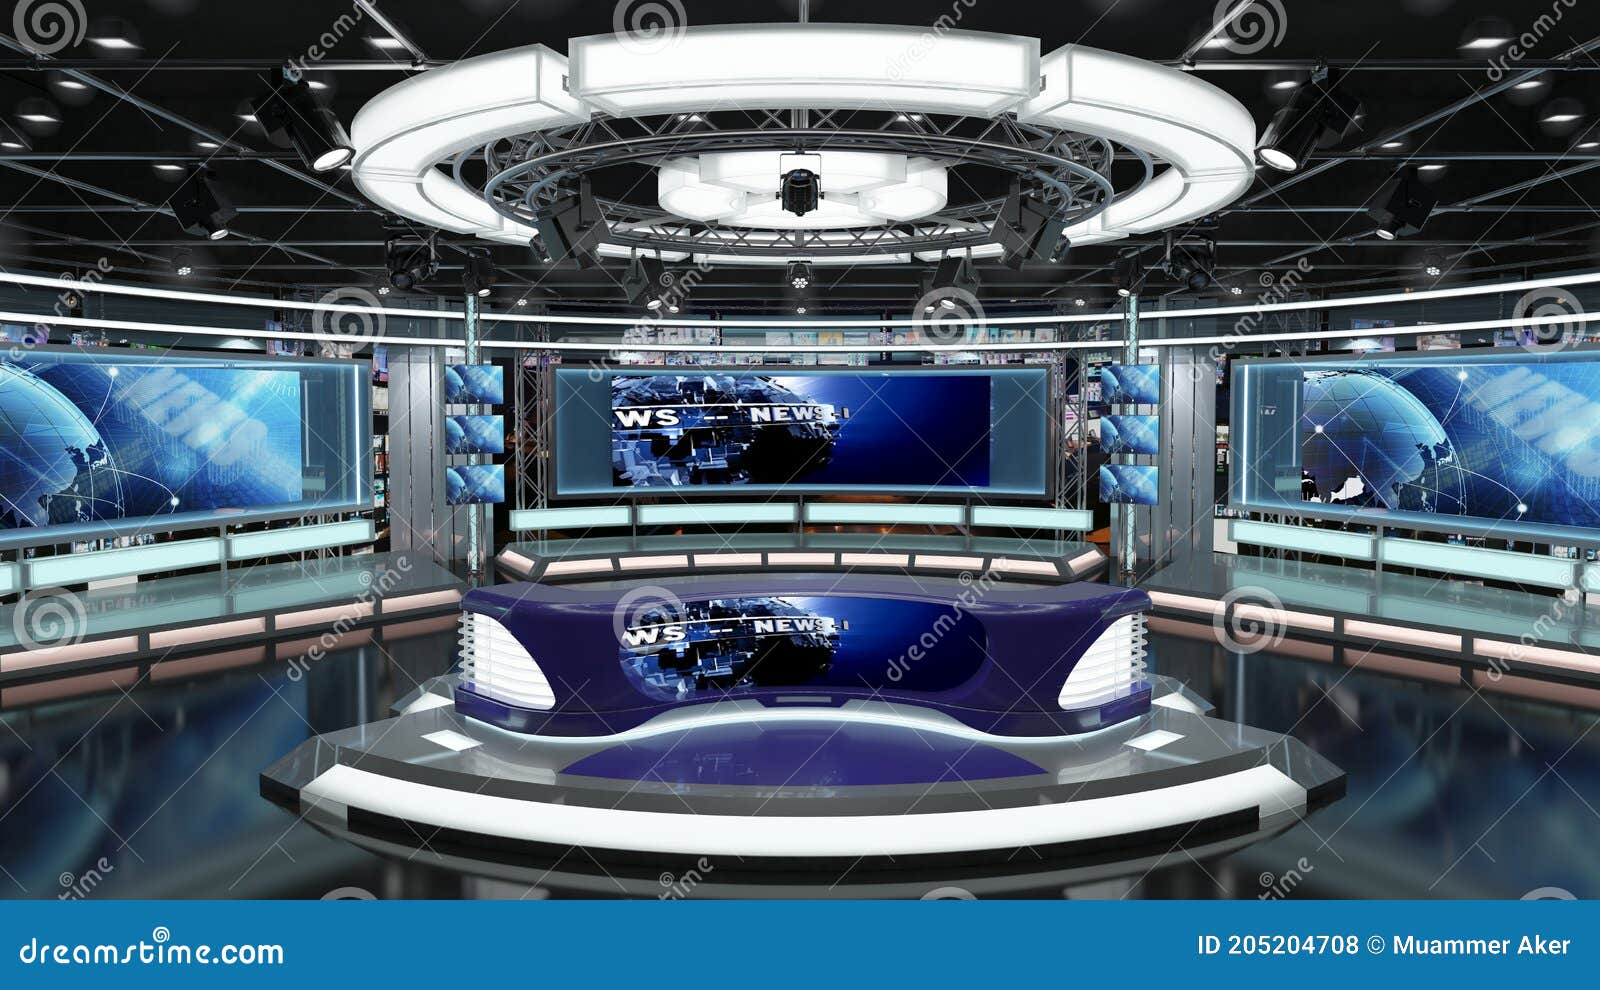 Tham gia ngay vào Virtual TV Studio News Set để trở thành chính truyền thông của tiêu điểm trong không gian ảo 3D đặc biệt này. Trải nghiệm cảm giác như đang làm việc trong một studio truyền hình chuyên nghiệp ngay tại nhà bạn.